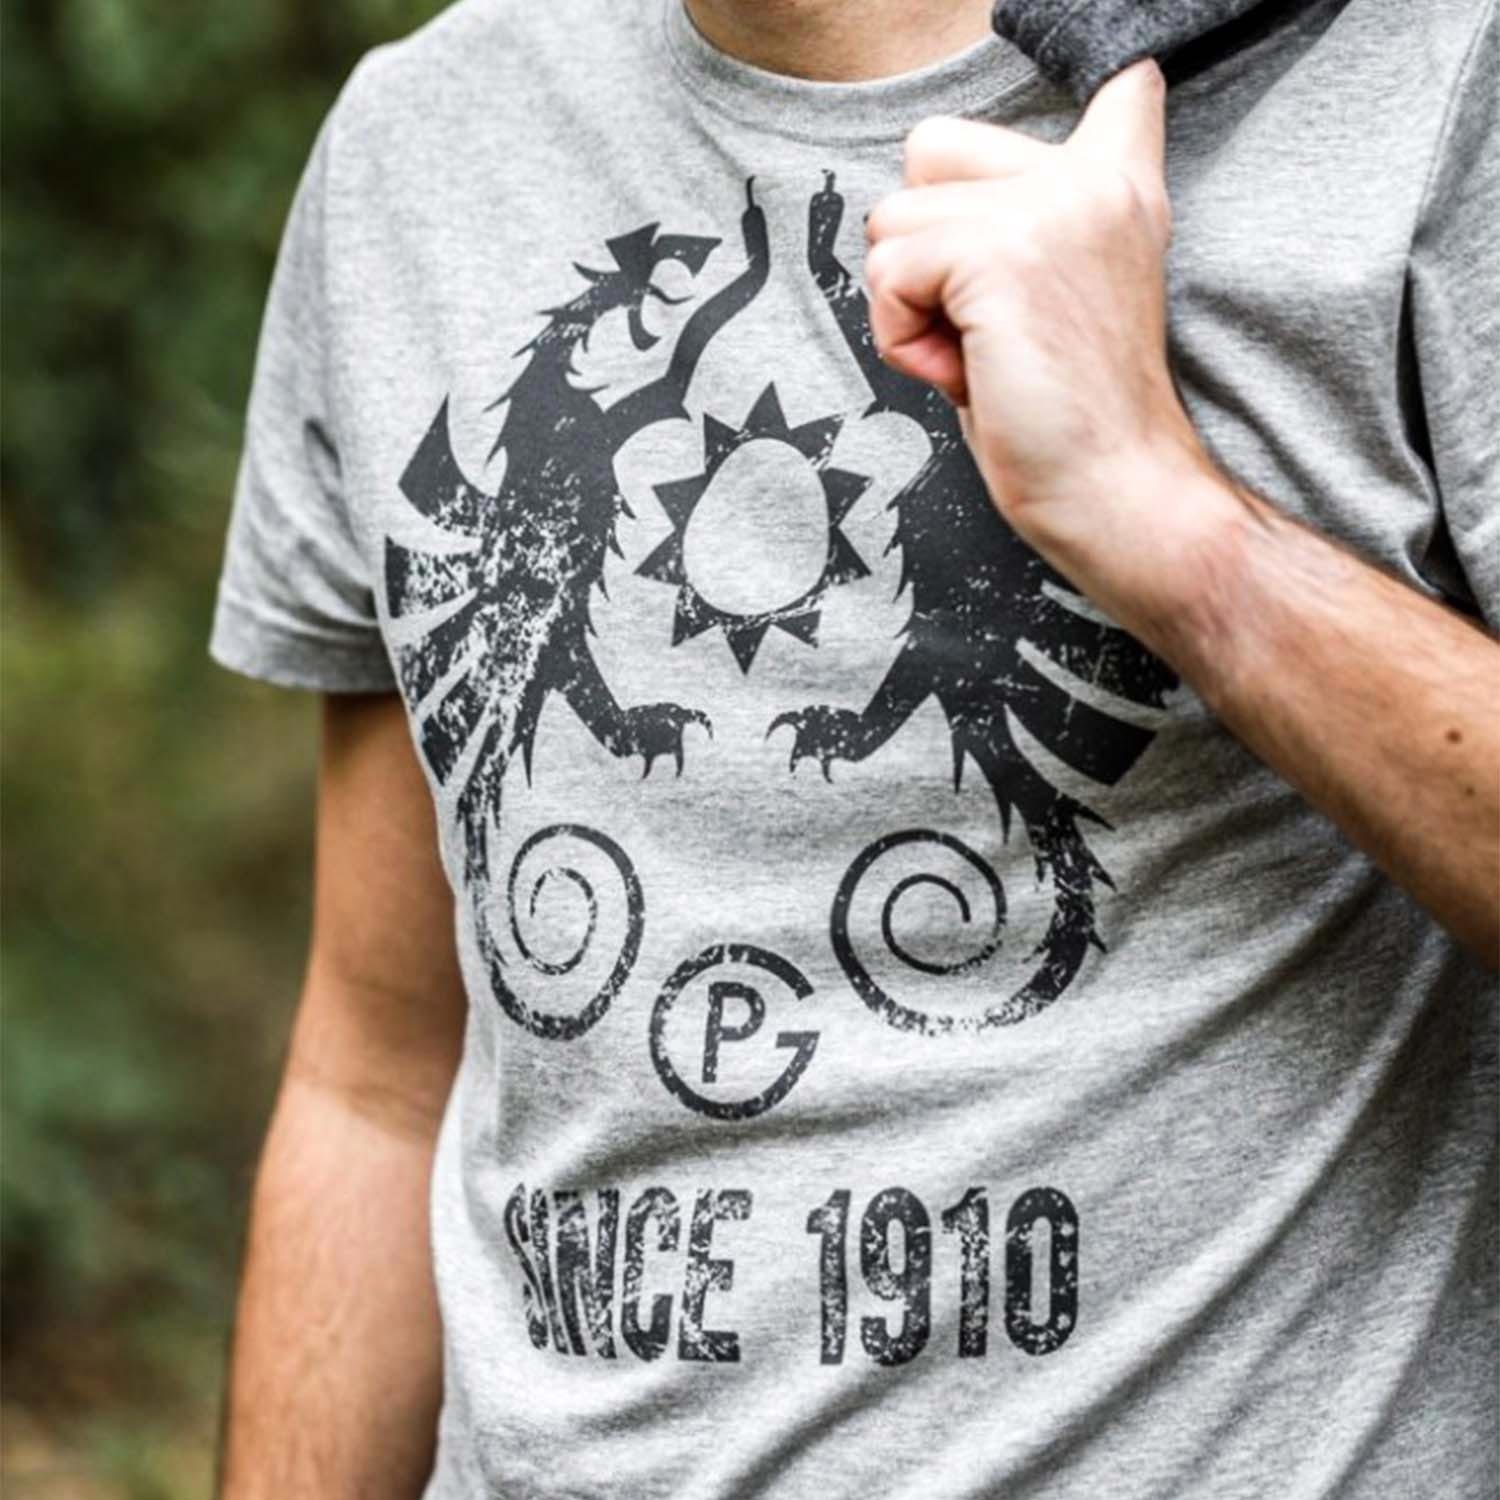 1910" Fanartikel T-Shirt T-Shirt Männergeschenk (limitierte Petromax Edition) "Since Größen in